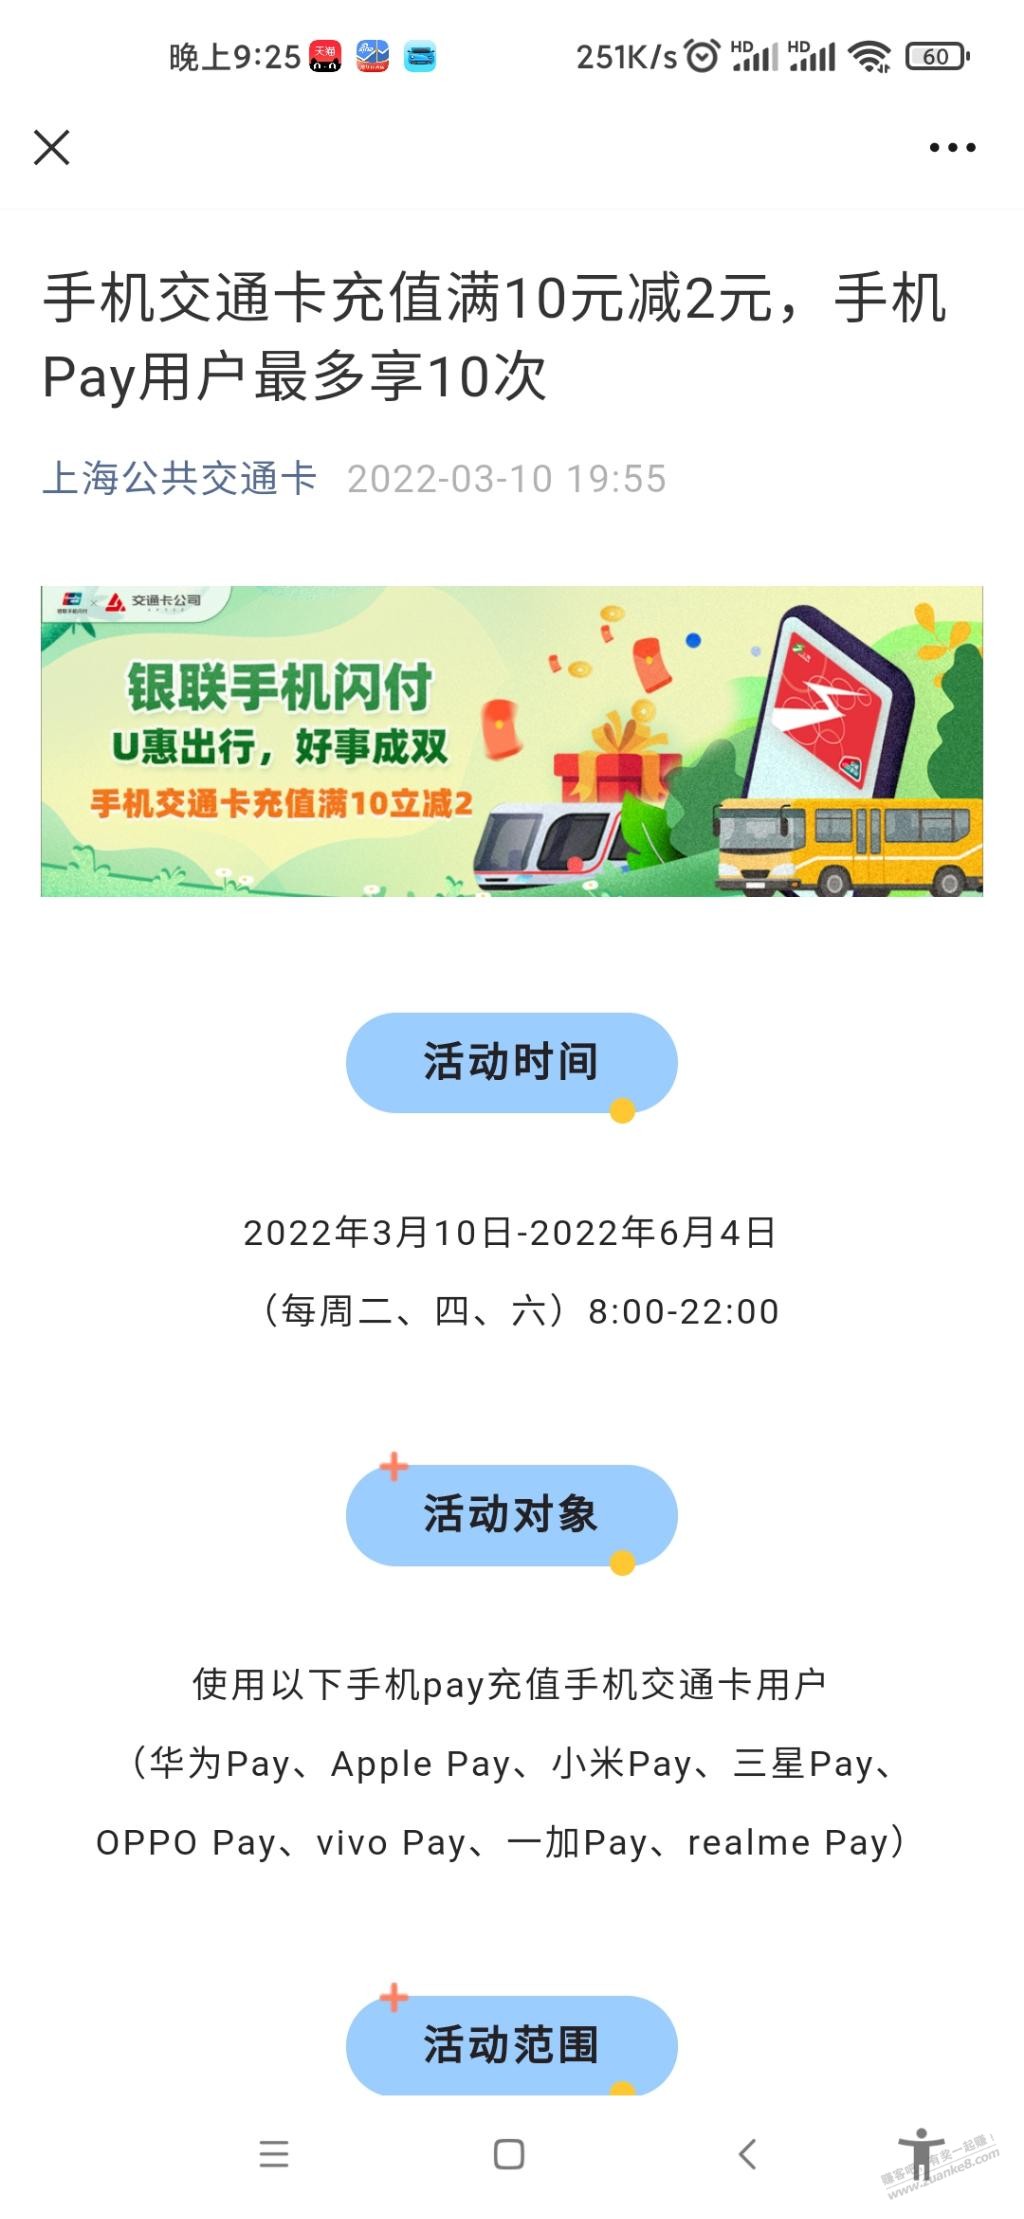 上海公交卡pay10-2